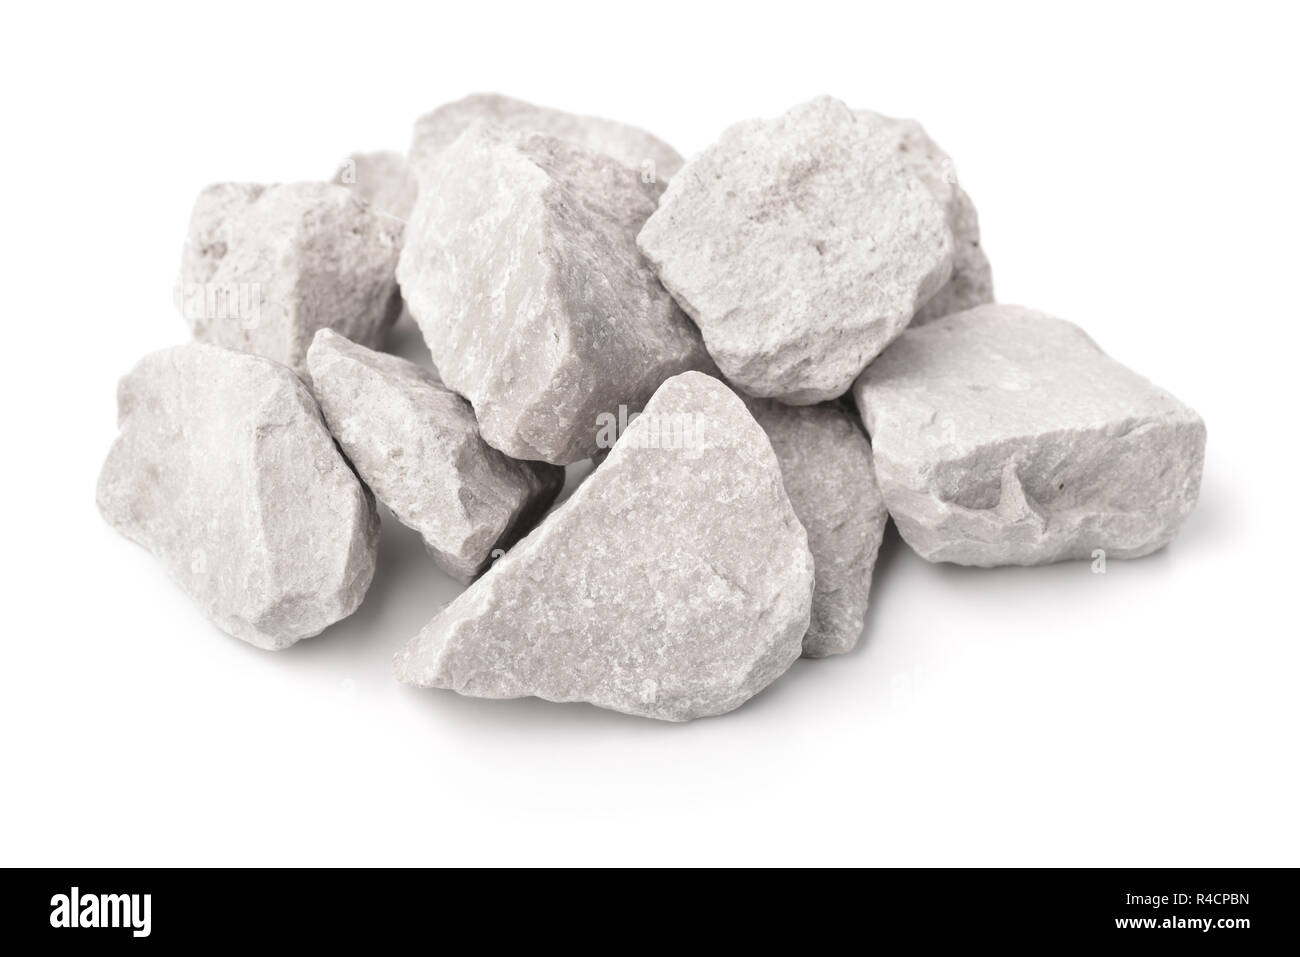 Des pierres de marbre concassé isolated on white Banque D'Images